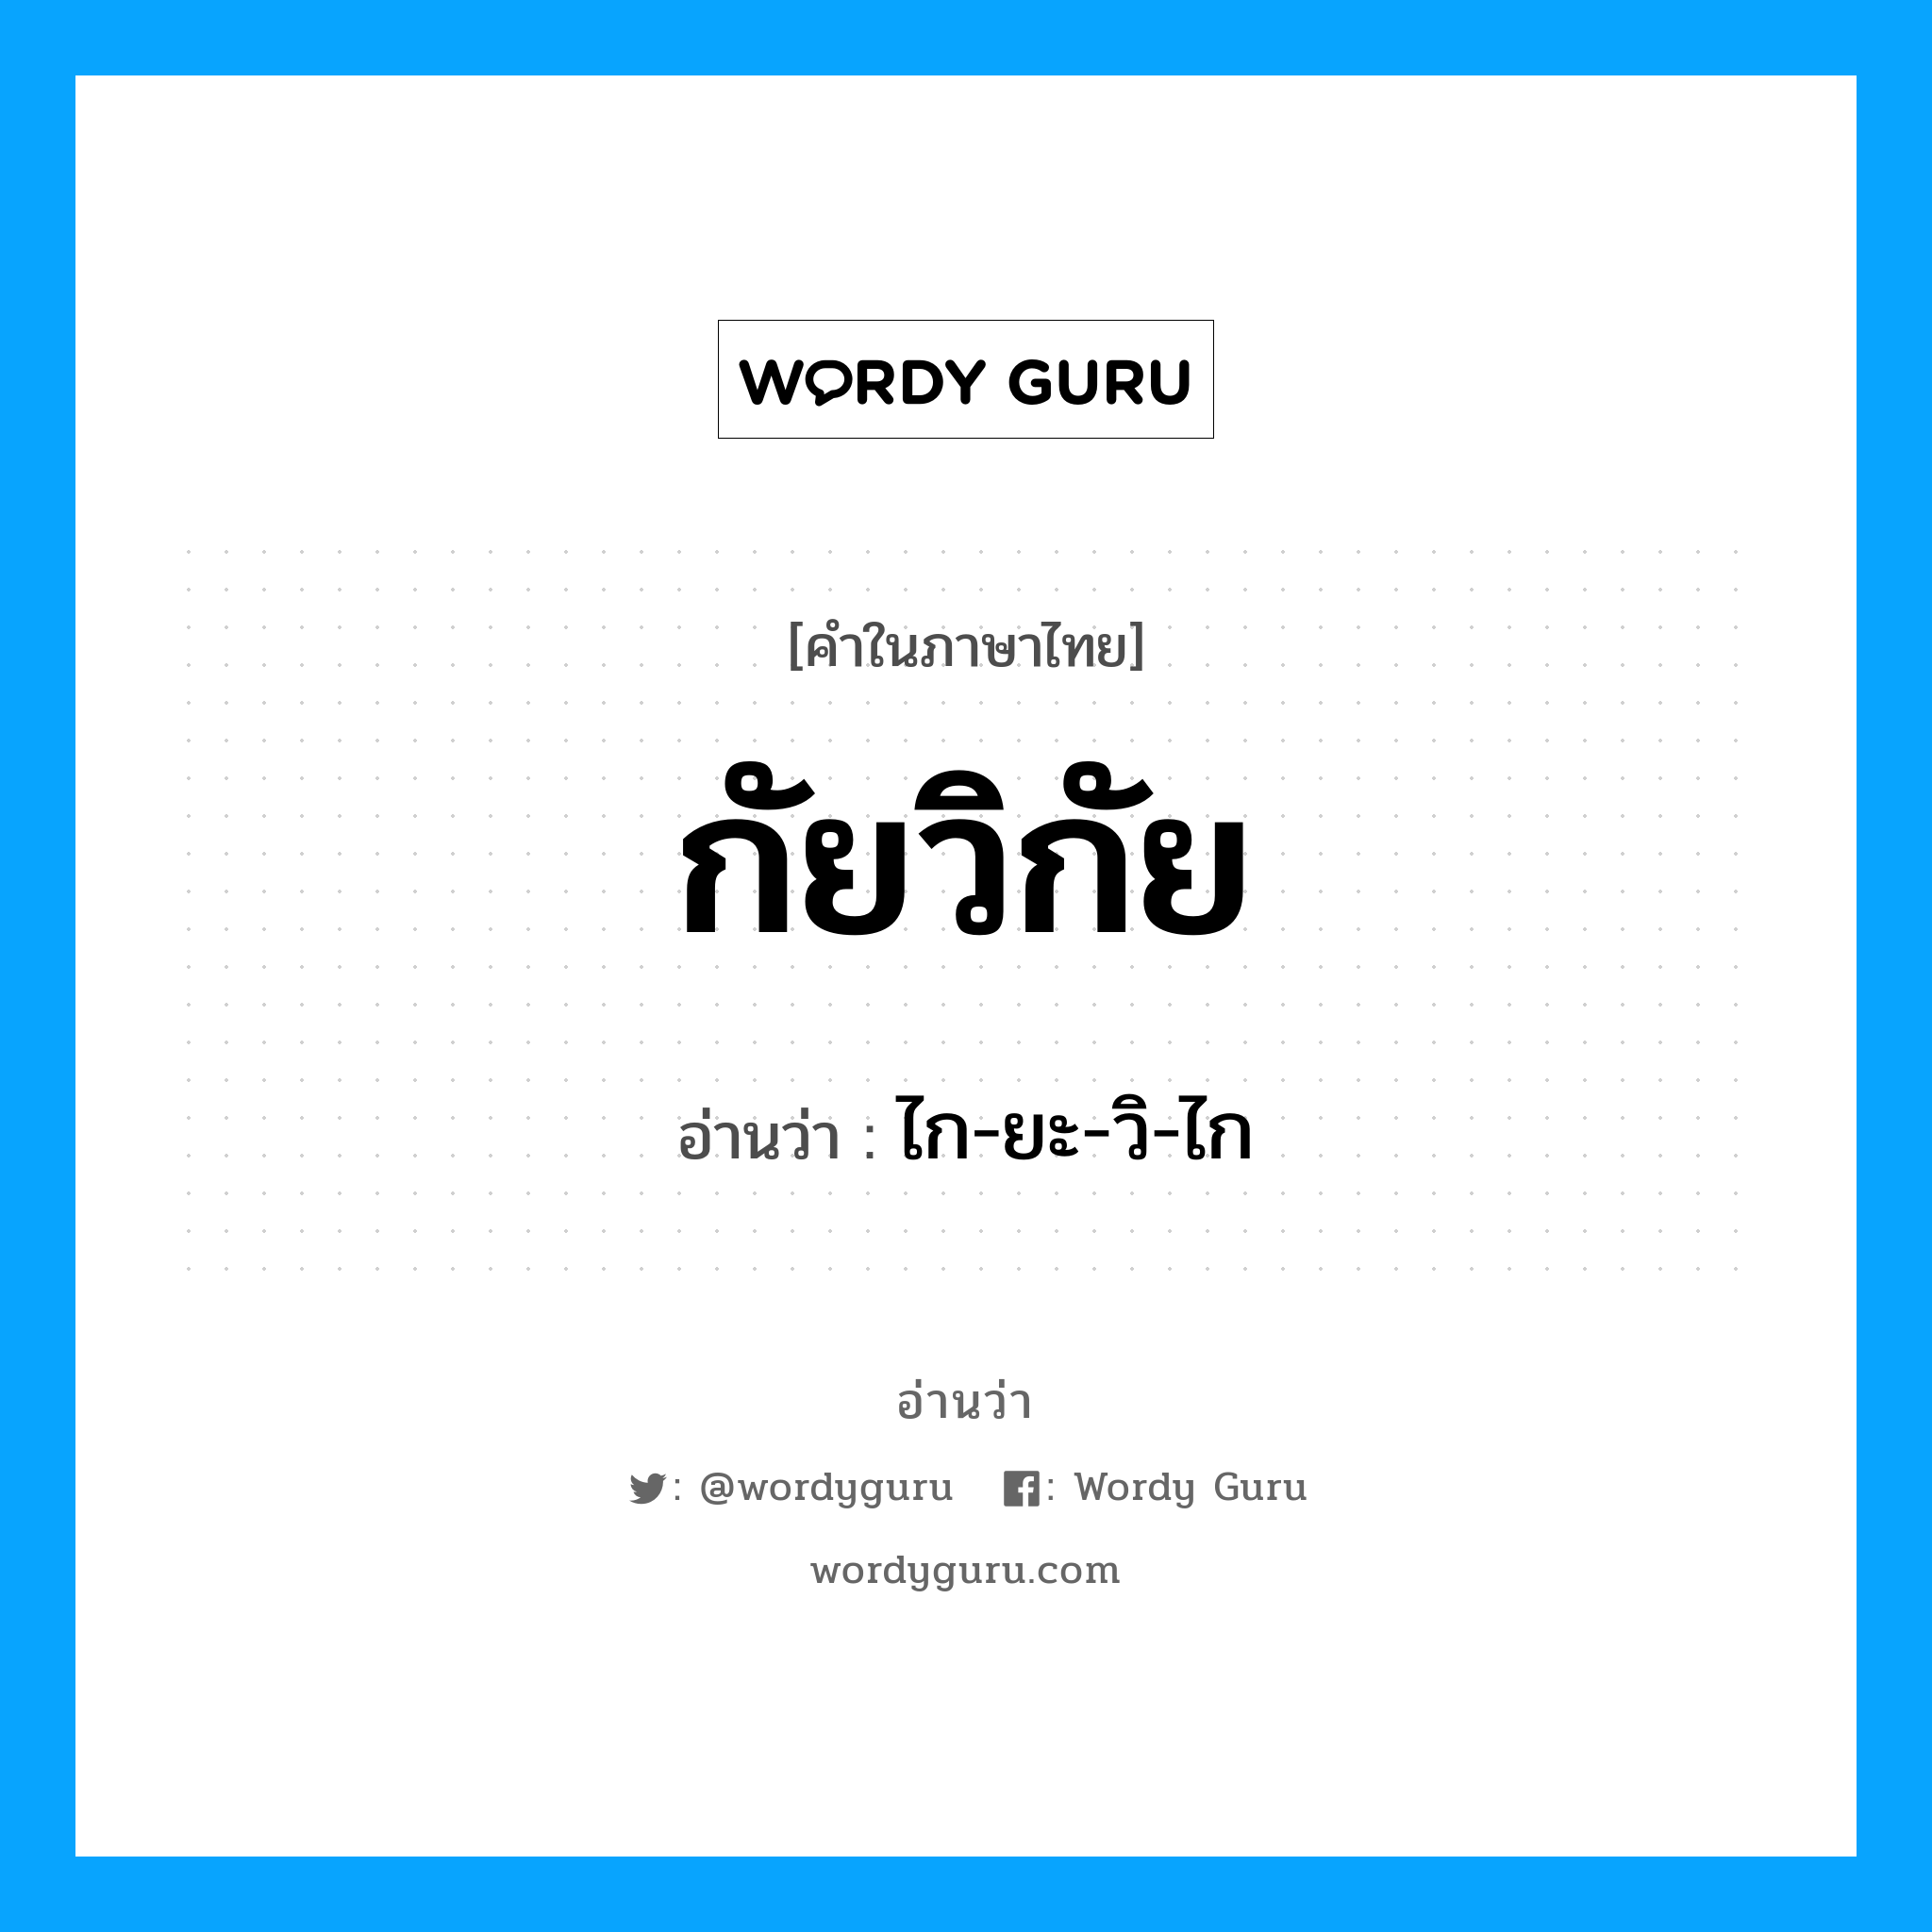 ไก-ยะ-วิ-ไก เป็นคำอ่านของคำไหน?, คำในภาษาไทย ไก-ยะ-วิ-ไก อ่านว่า กัยวิกัย